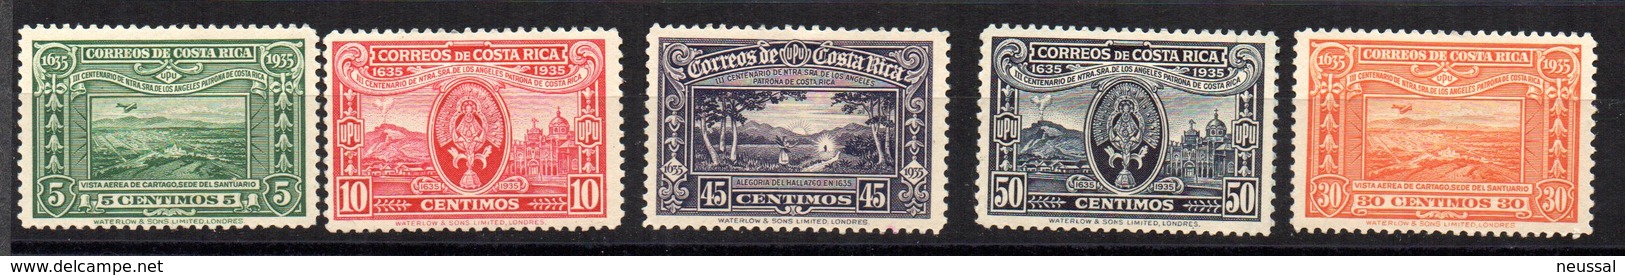 Serie Nº 159/63 Costa Rica - Costa Rica